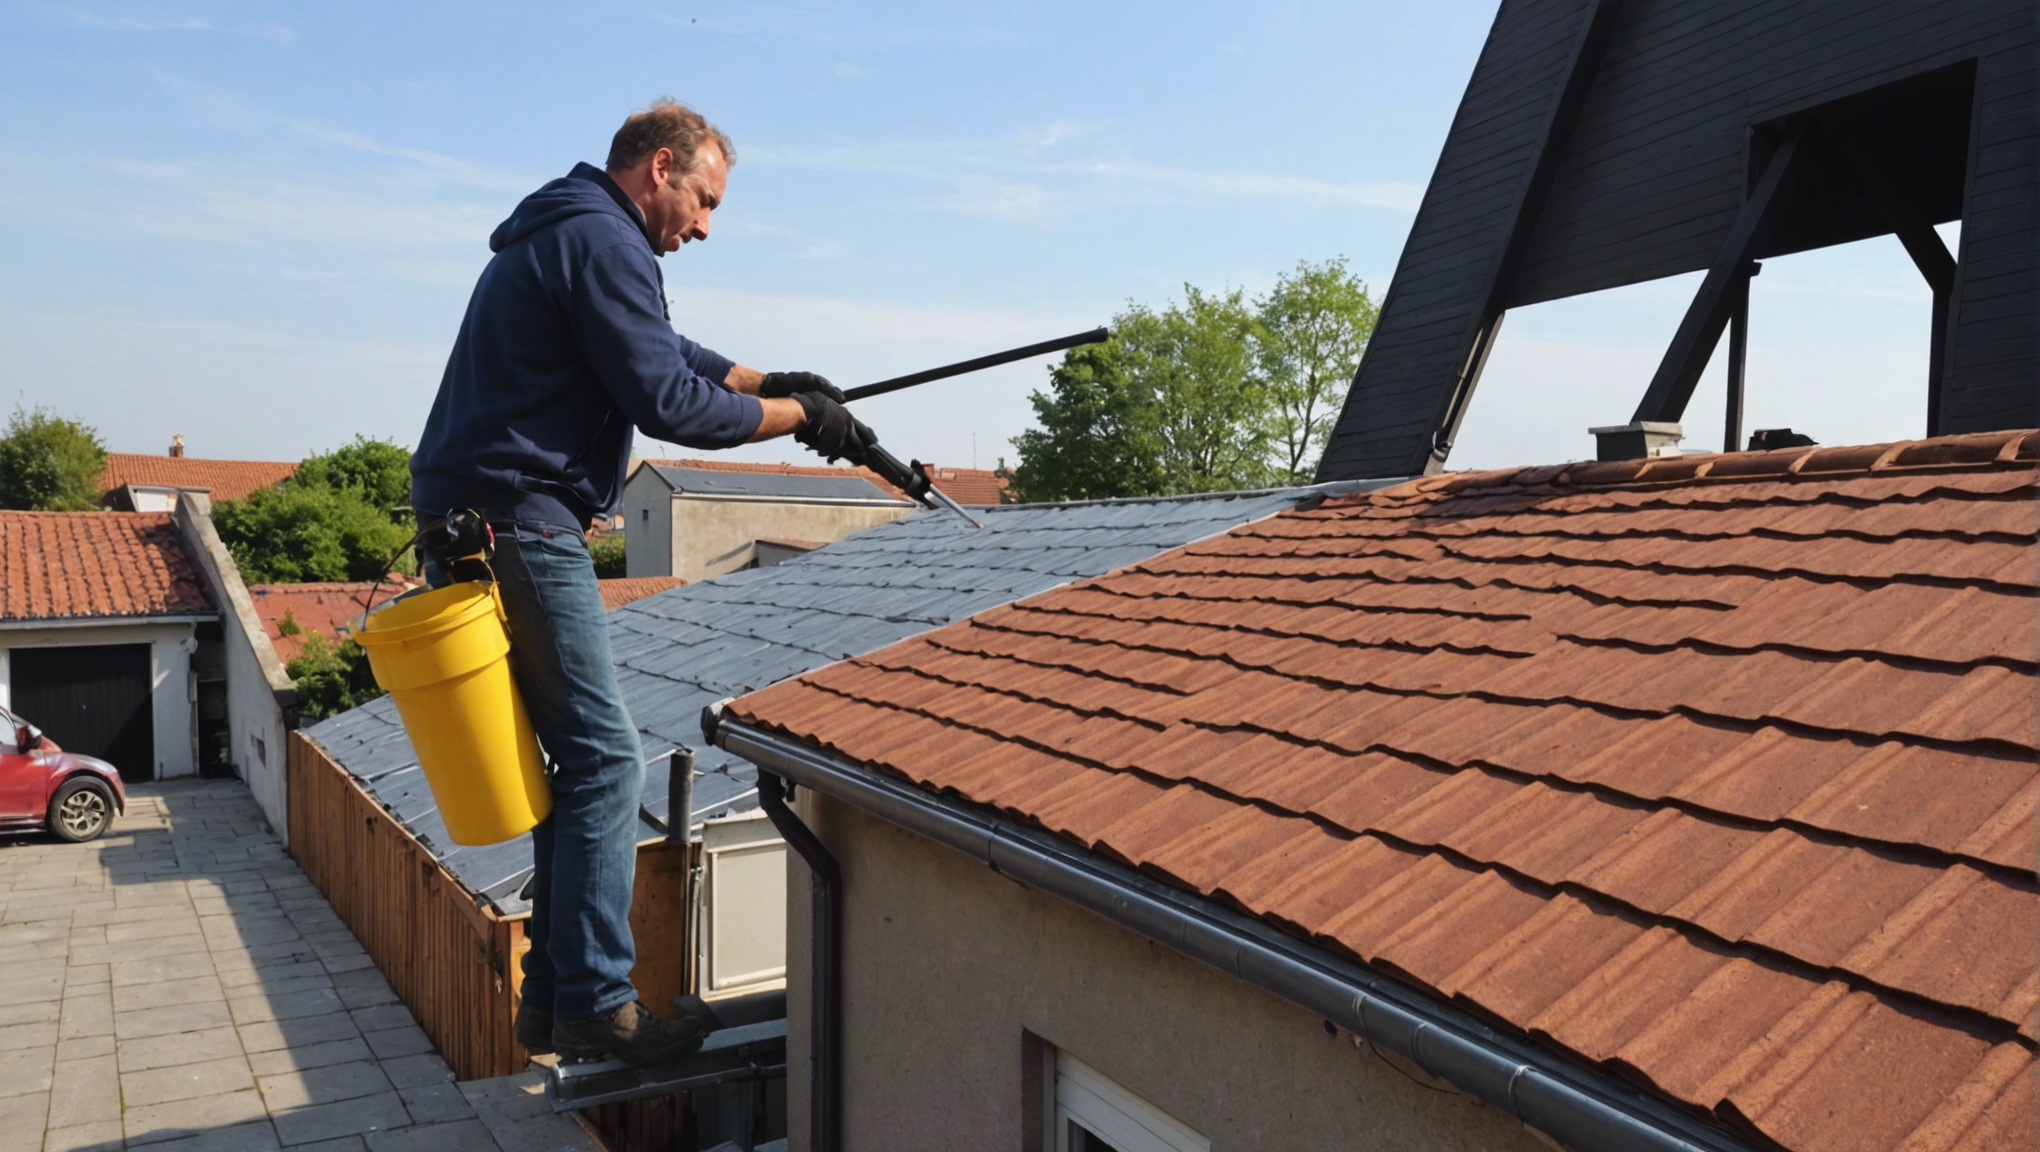 découvrez nos conseils pratiques pour un nettoyage efficace de votre toiture et préserver sa longévité. retrouvez les meilleures méthodes et produits pour un entretien adapté à tous types de toitures.